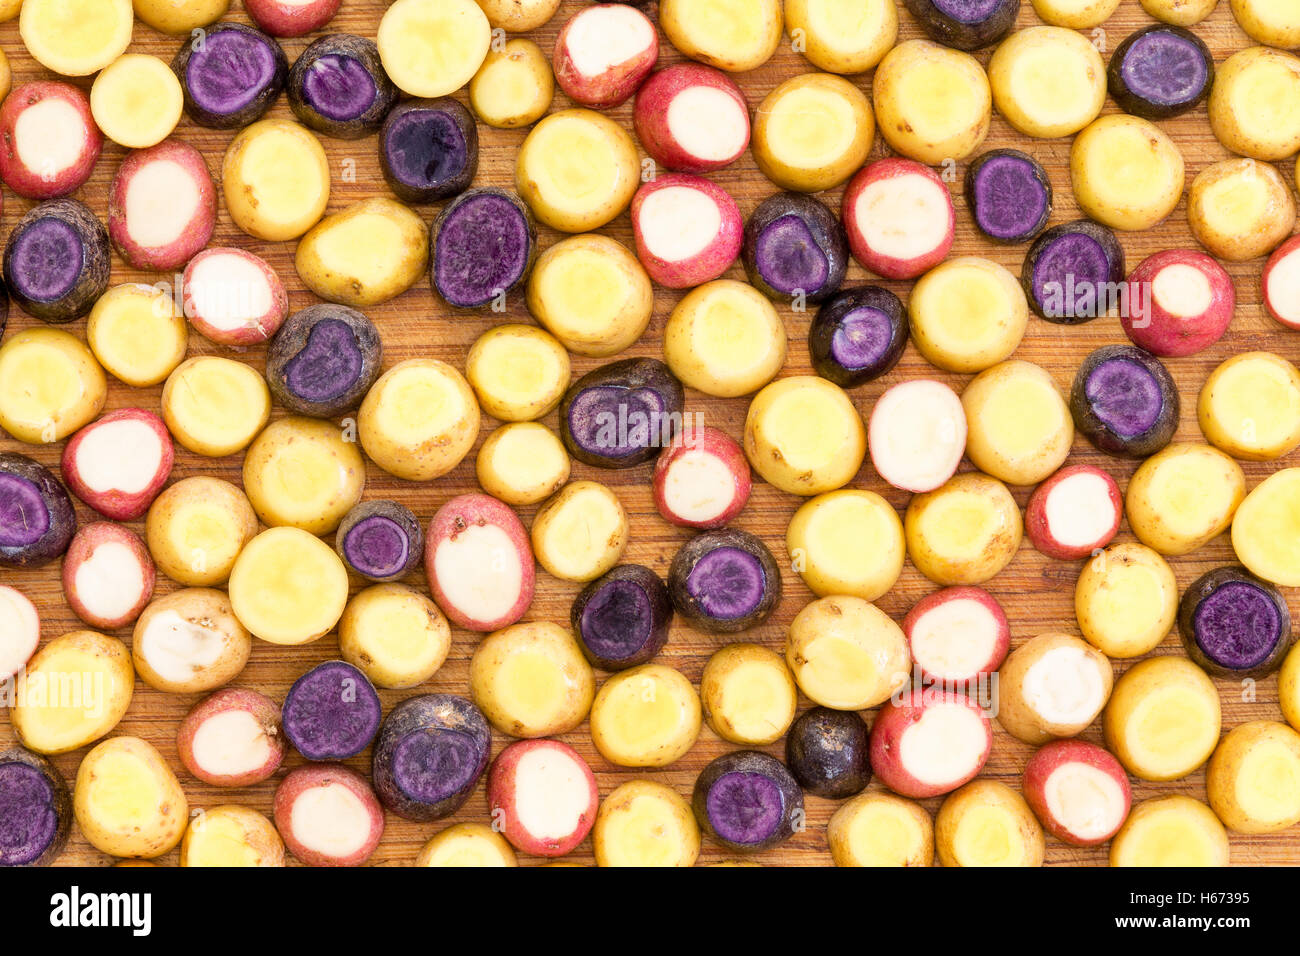 Coupé en tranches et garni de pommes de terre baby mini fond de légumes frais prêts à être grillés dans une vue plein cadre Banque D'Images